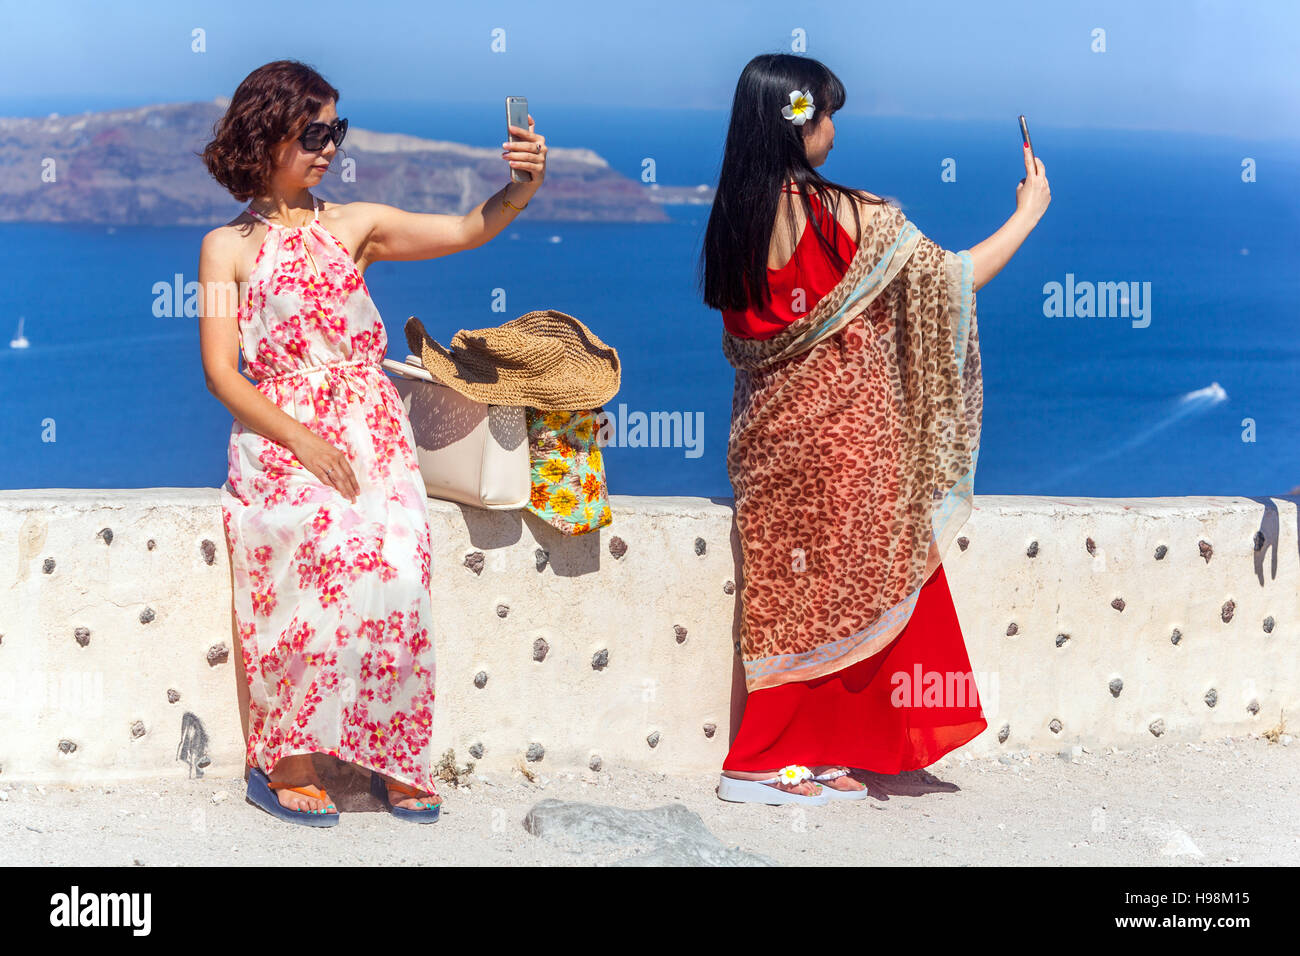 Turisti asiatici che prendono un selfie con fotocamera smartphone sopra caldera, Santorini, isola greca, Grecia turisti Foto Stock